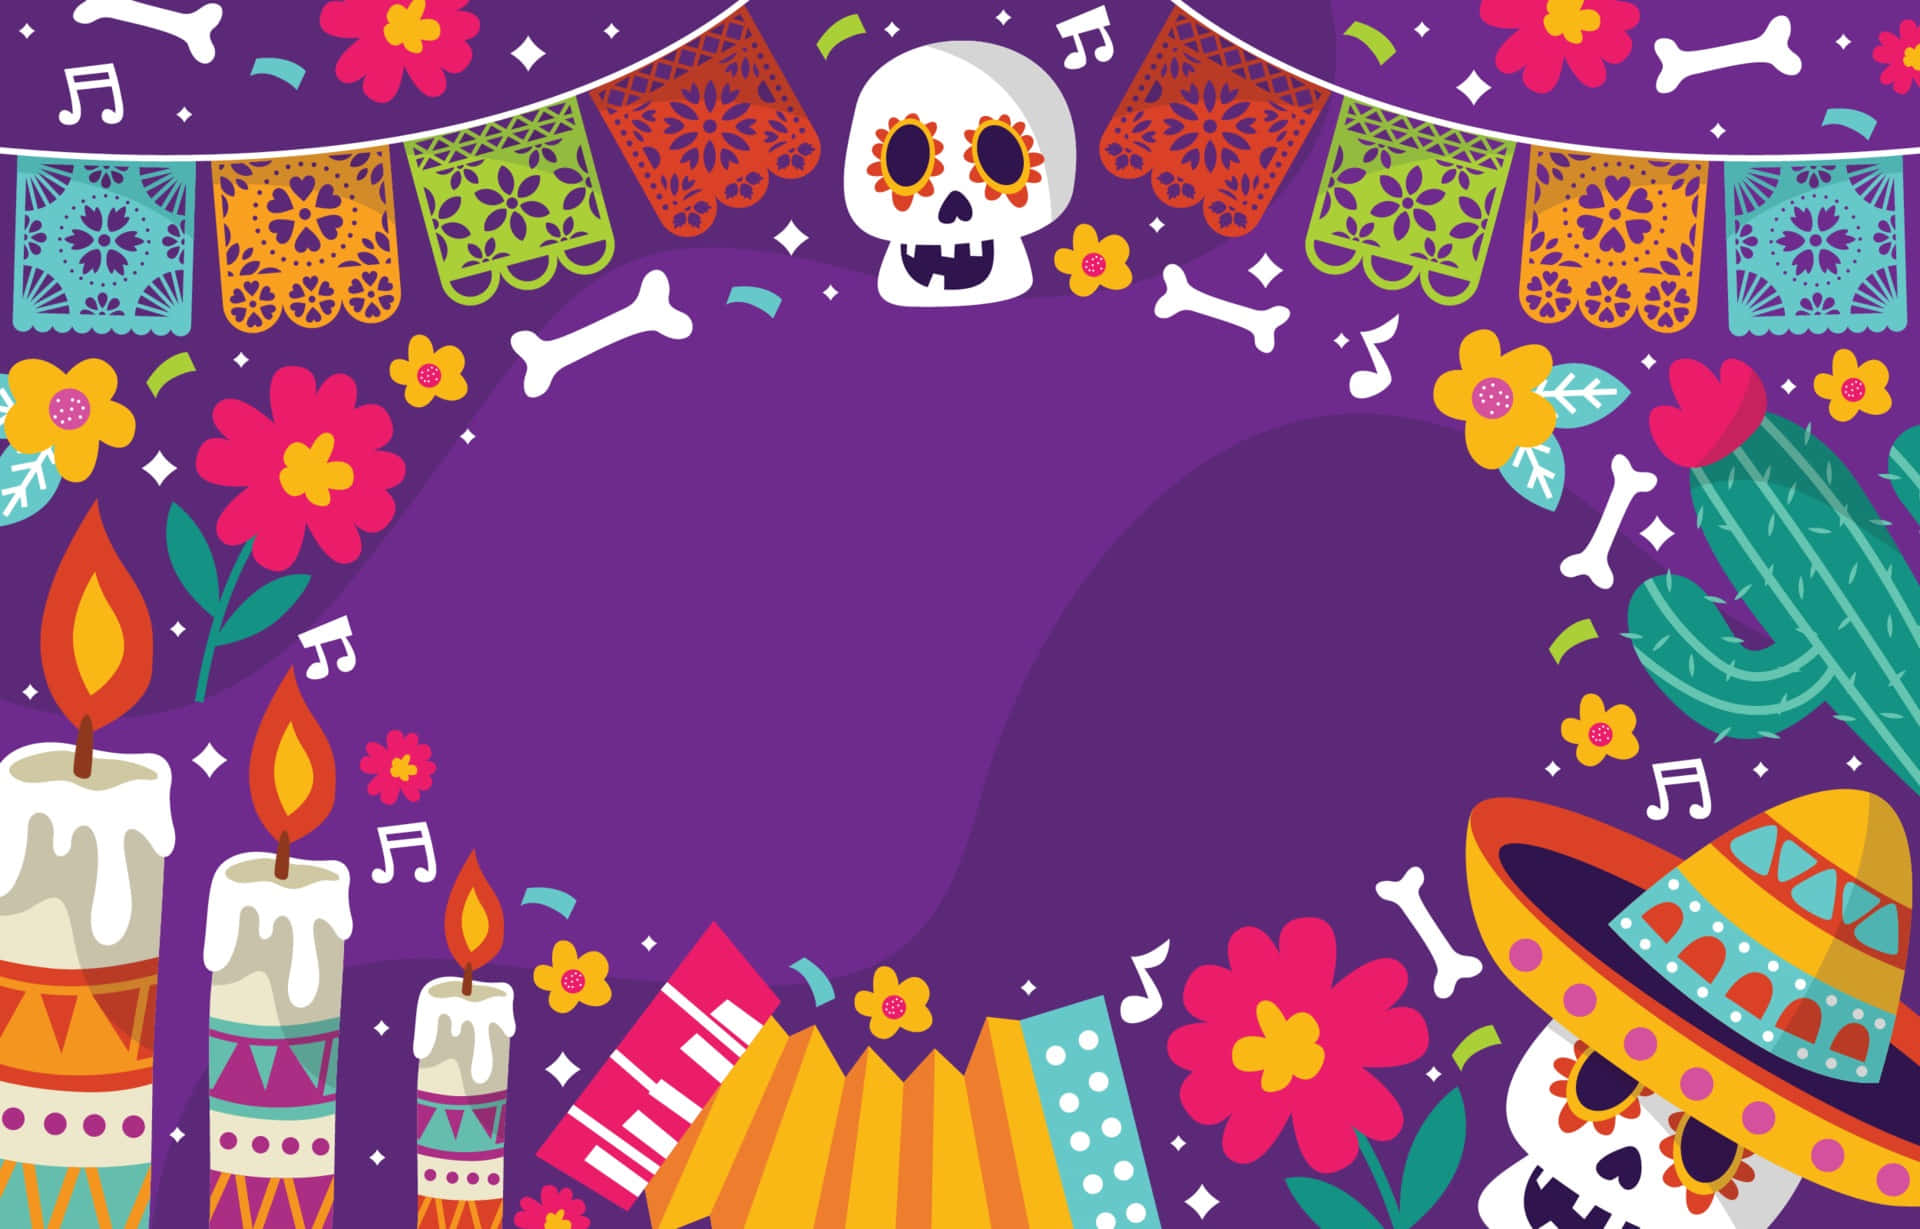 Colorful celebration of Dia De Los Muertos